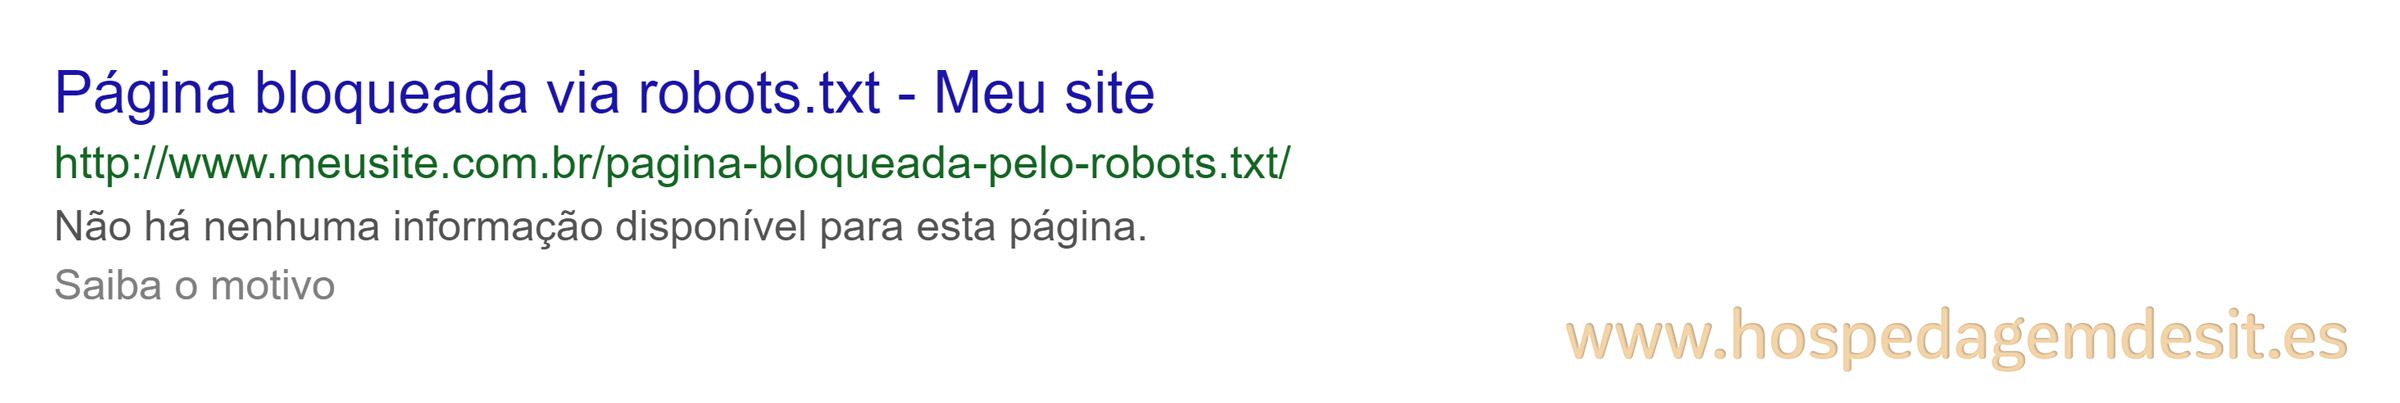 exemplo de página bloqueada pelo arquivo robots.txt